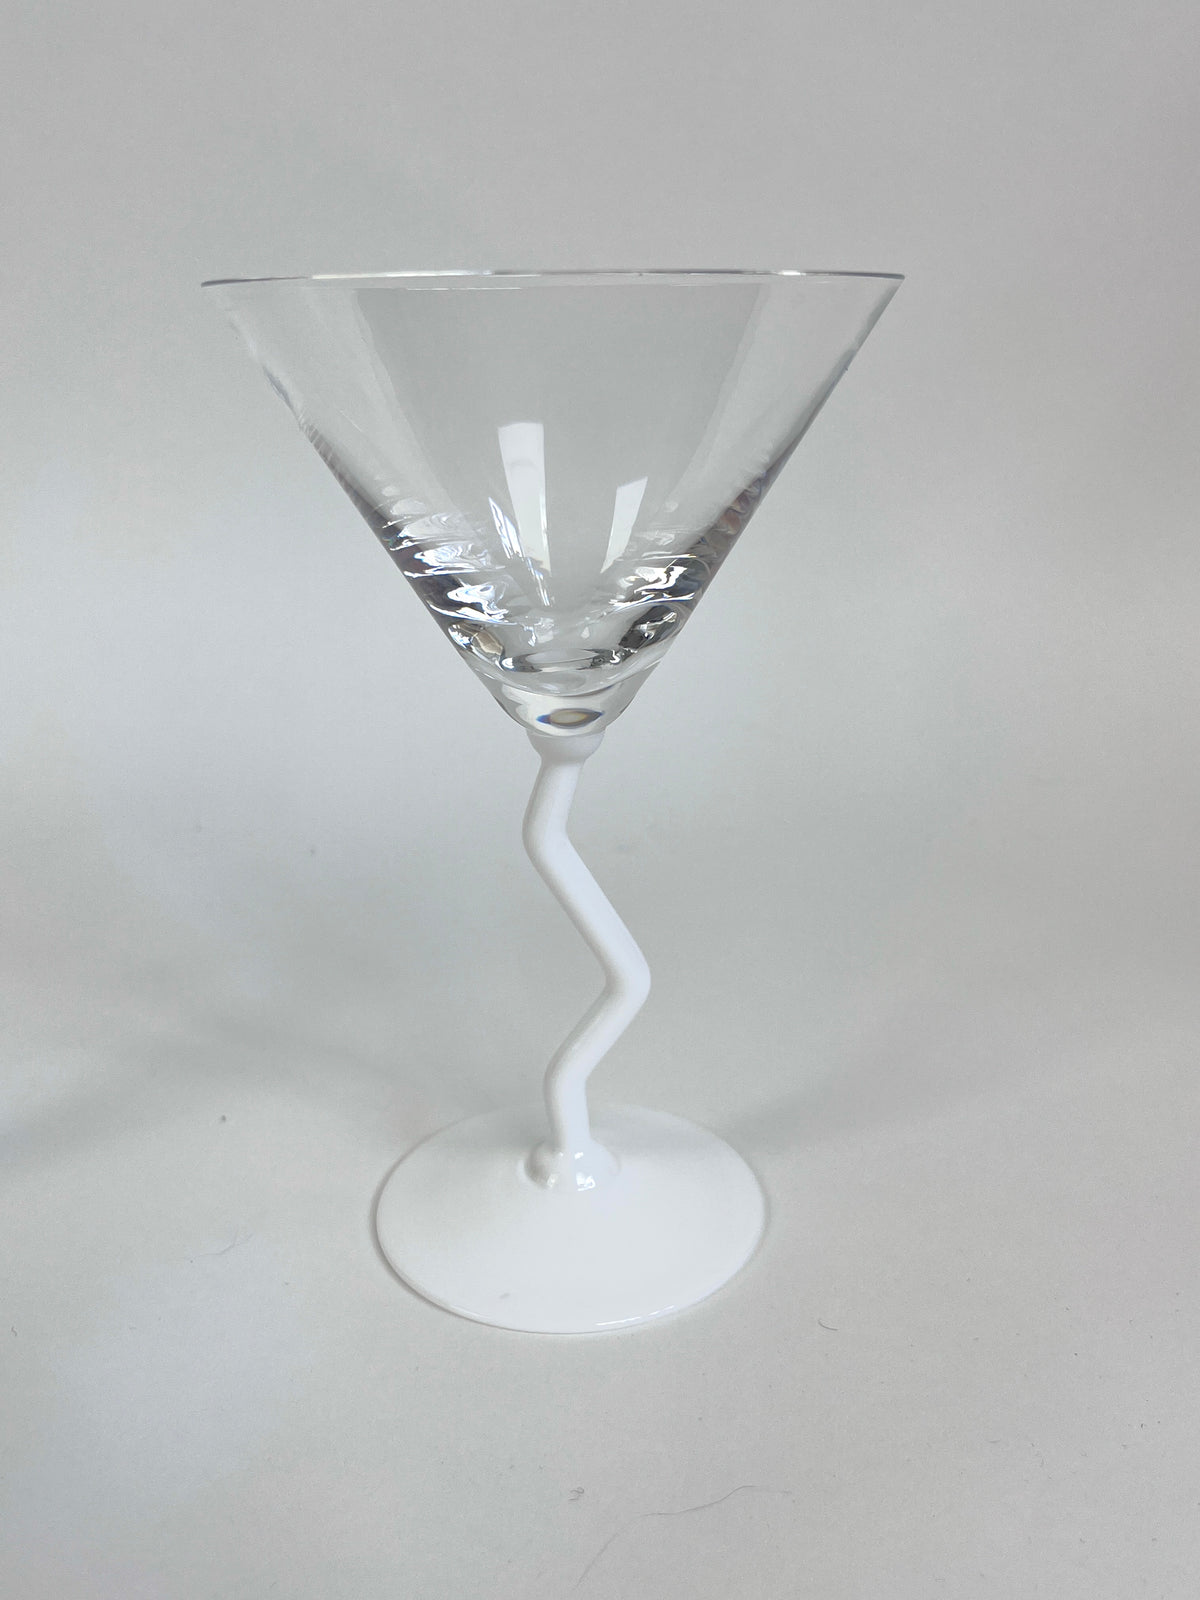 Postmodern Martini Glasses - White Stems